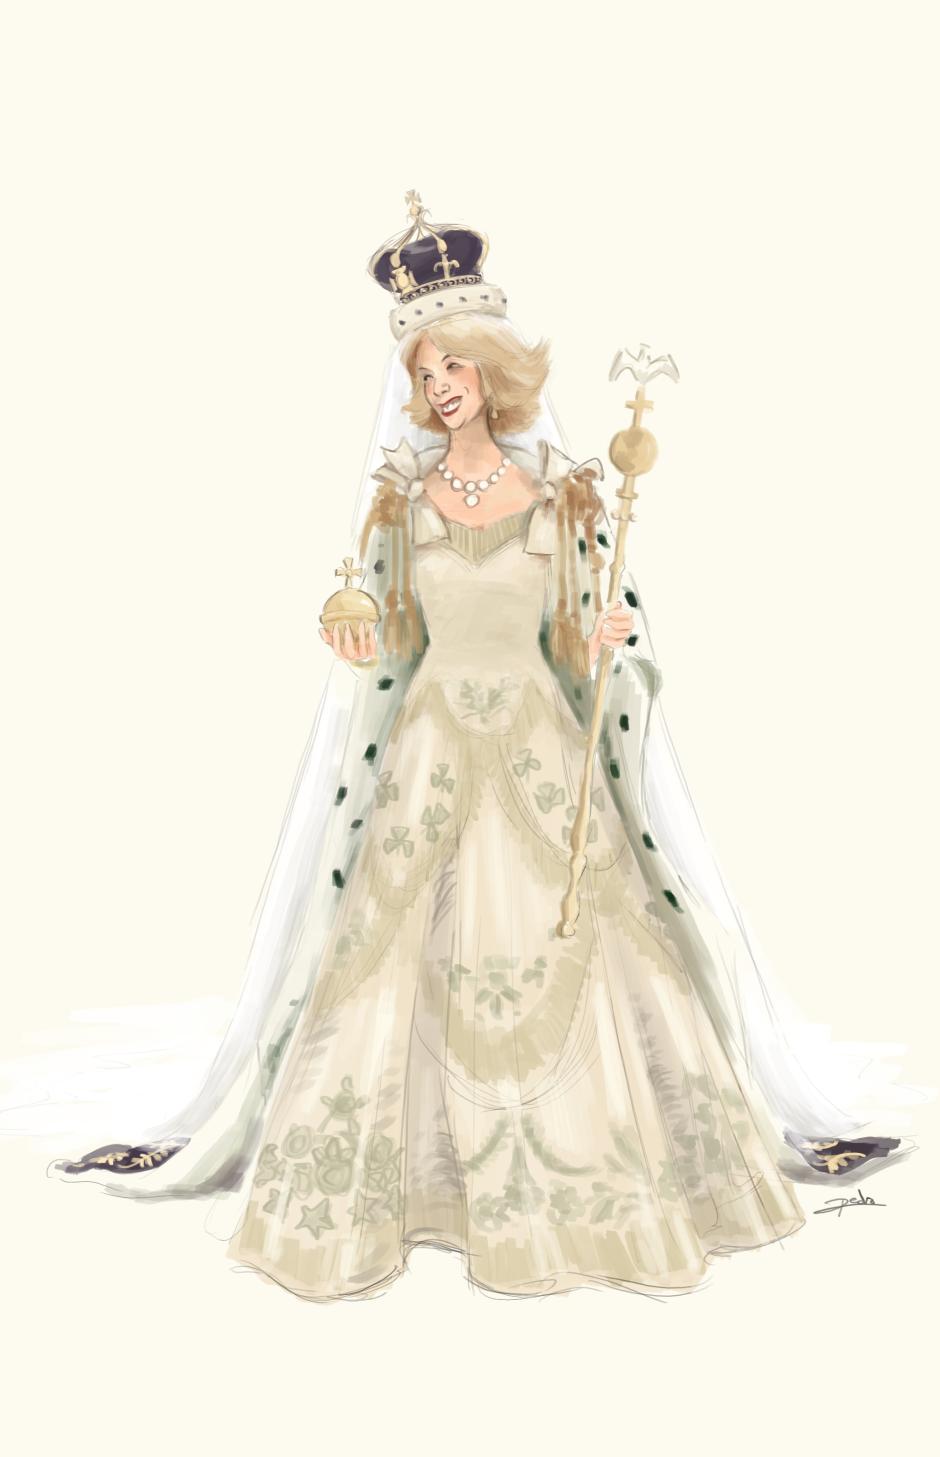 Camila con los atributos reales y el traje de coronación de Isabel II. La coronación de Camila, la boda Real que nunca tuvo.